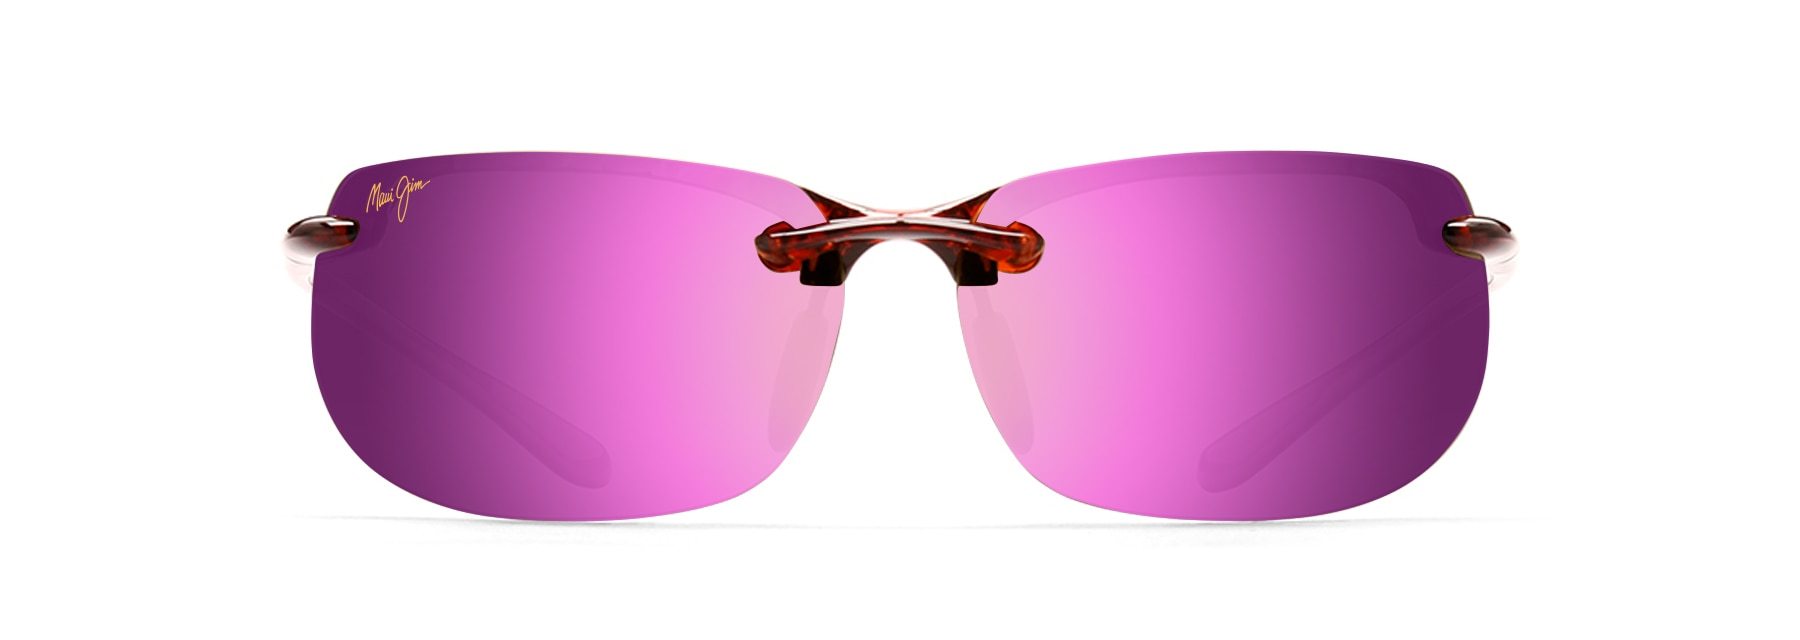 MyMaui Banyans MM412-012 Sunglasses